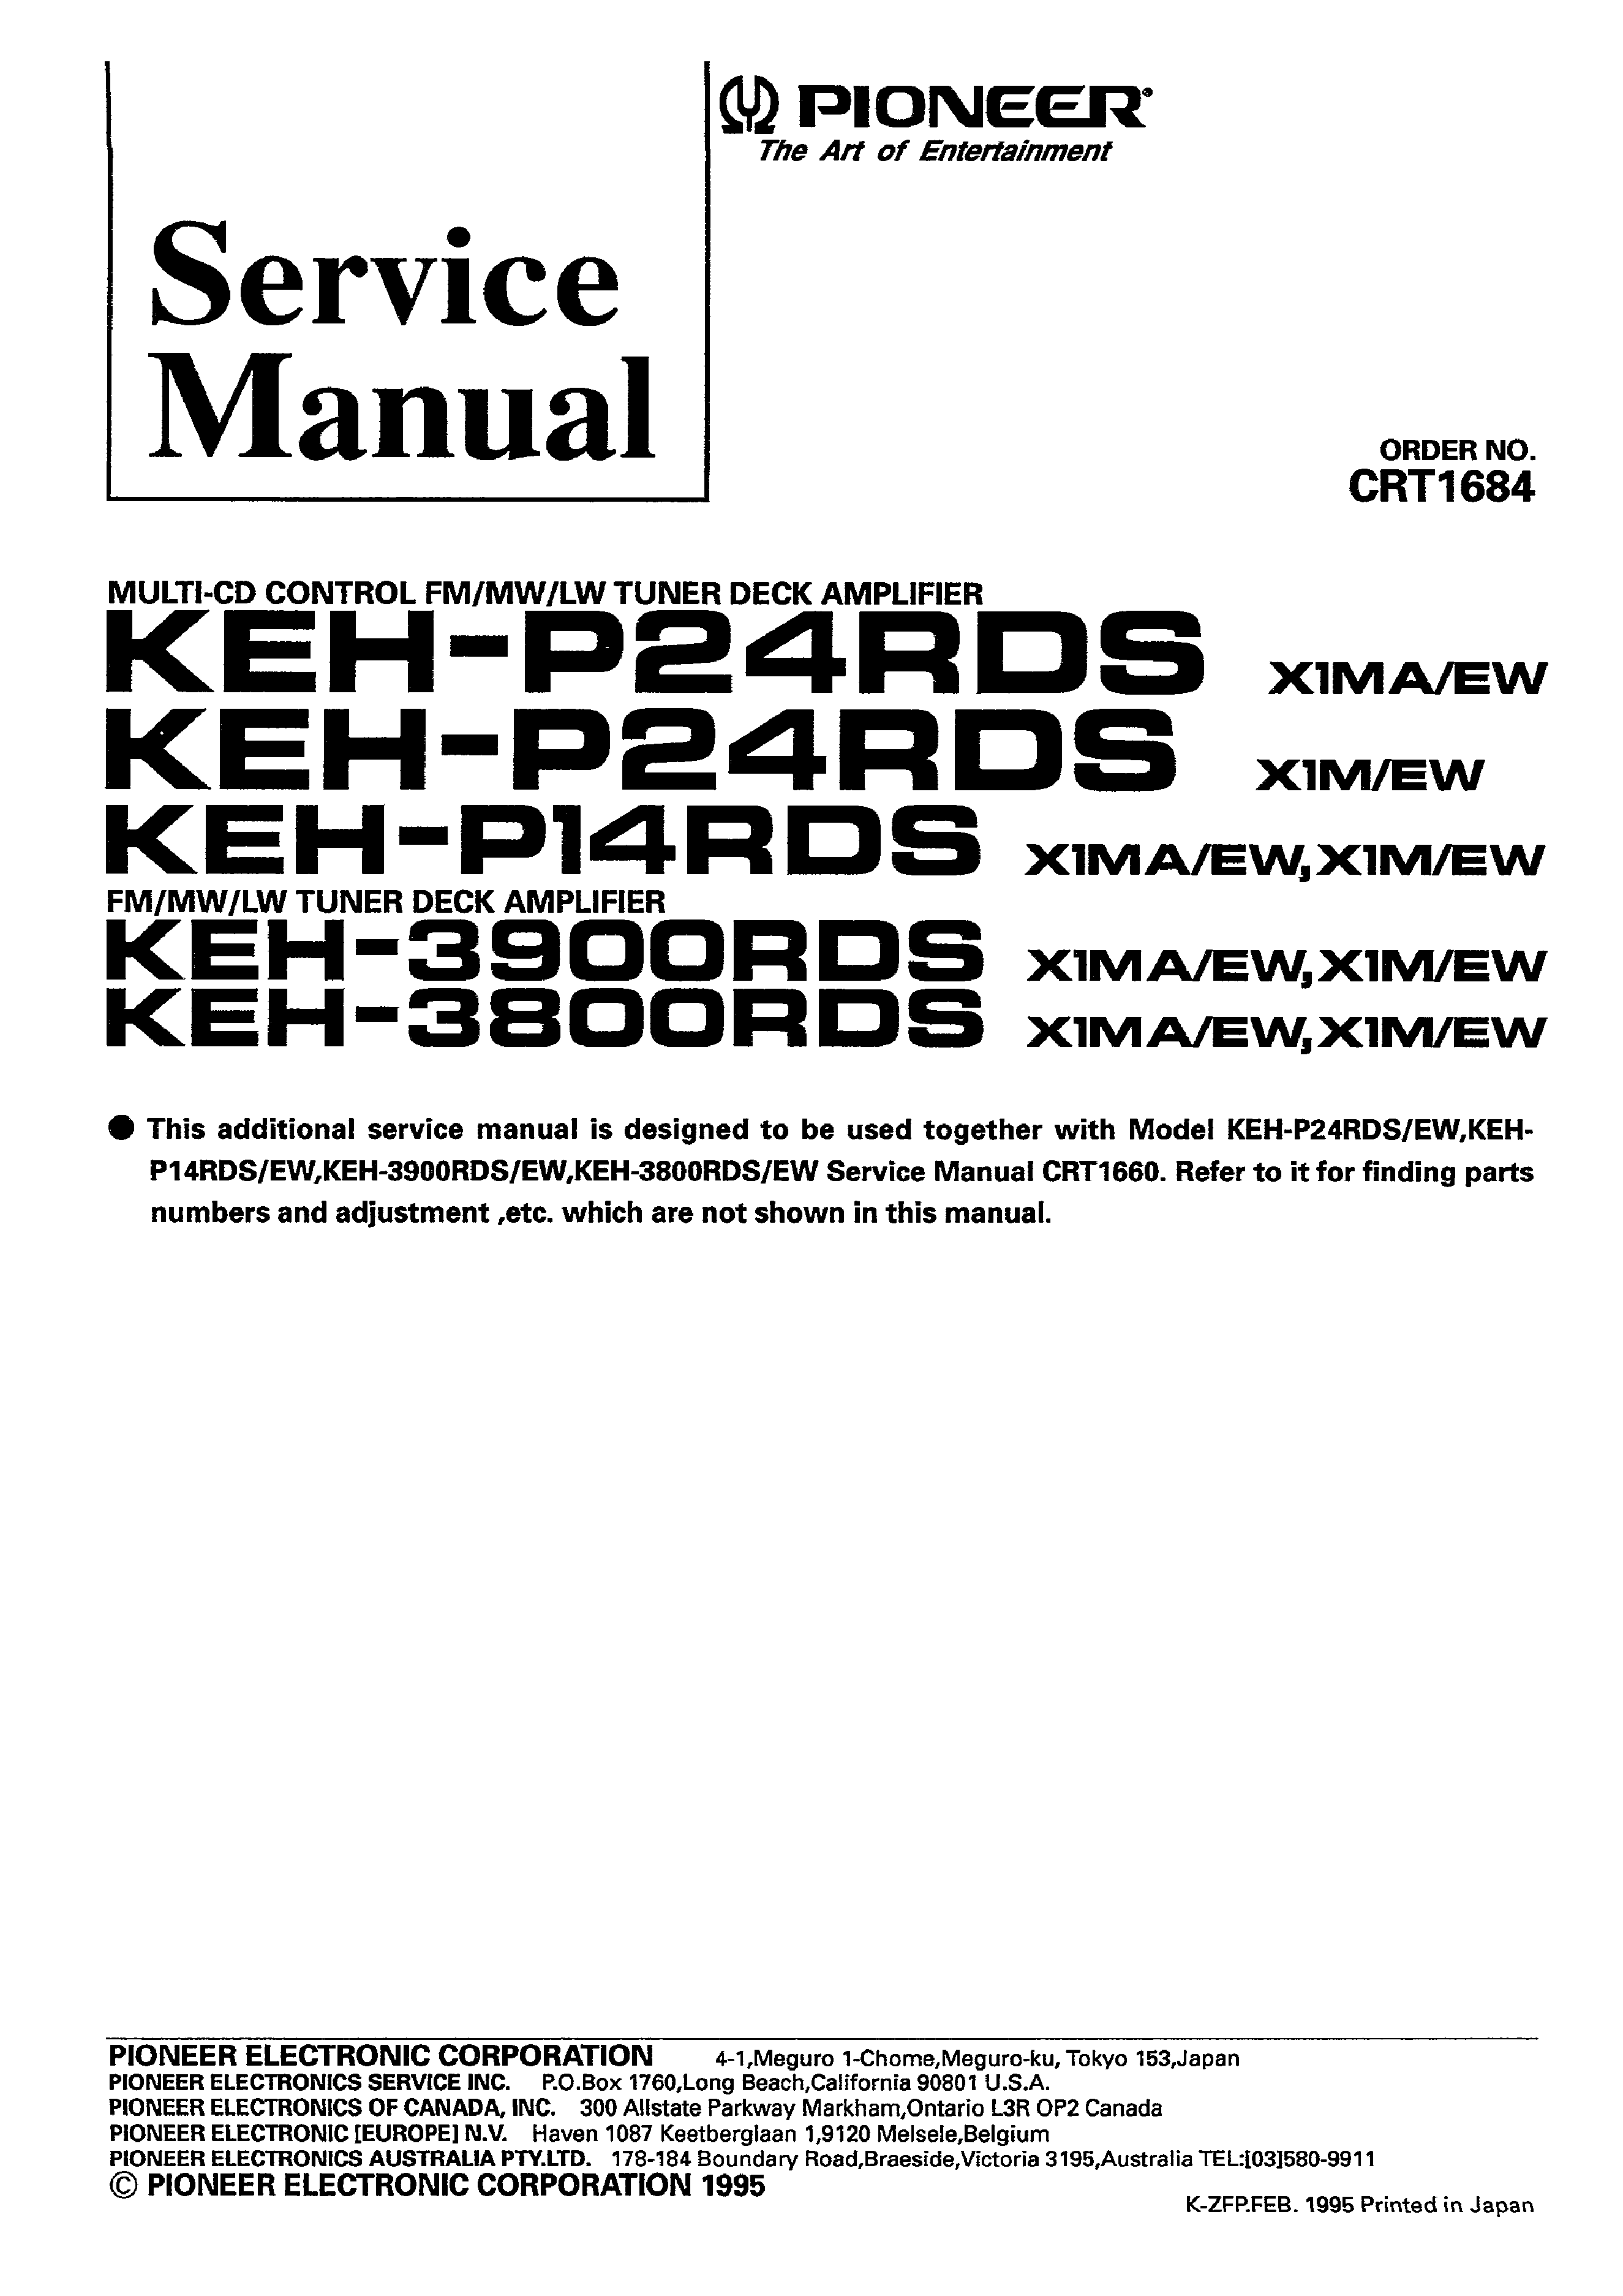 PIONEER KEHP14RDS X1M/EW - Service Manual Immediate Download